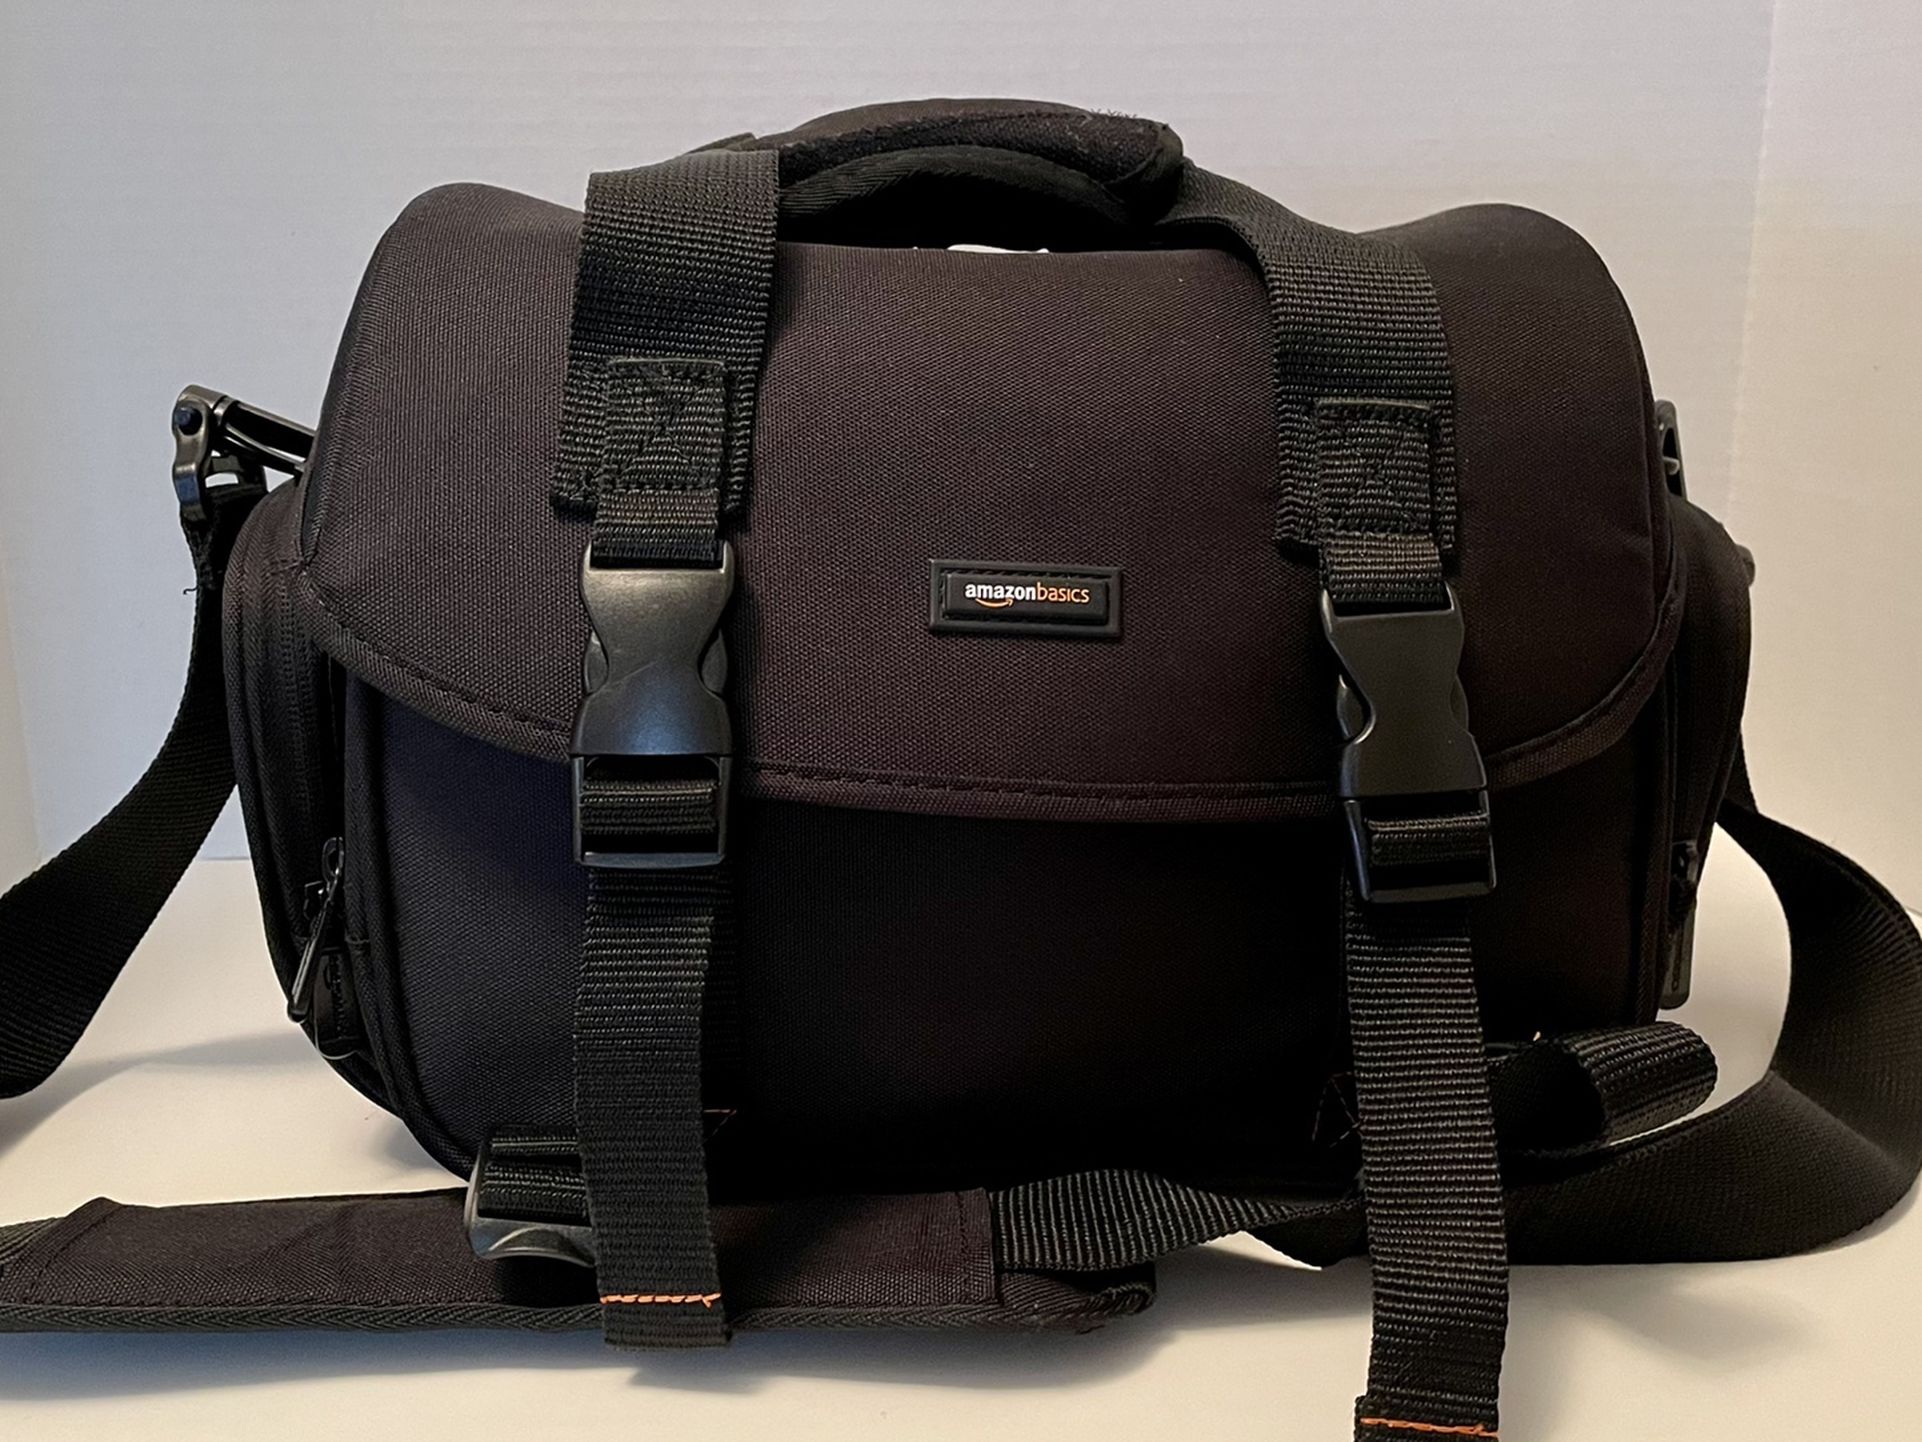 Amazon Basics Large Camera Bag